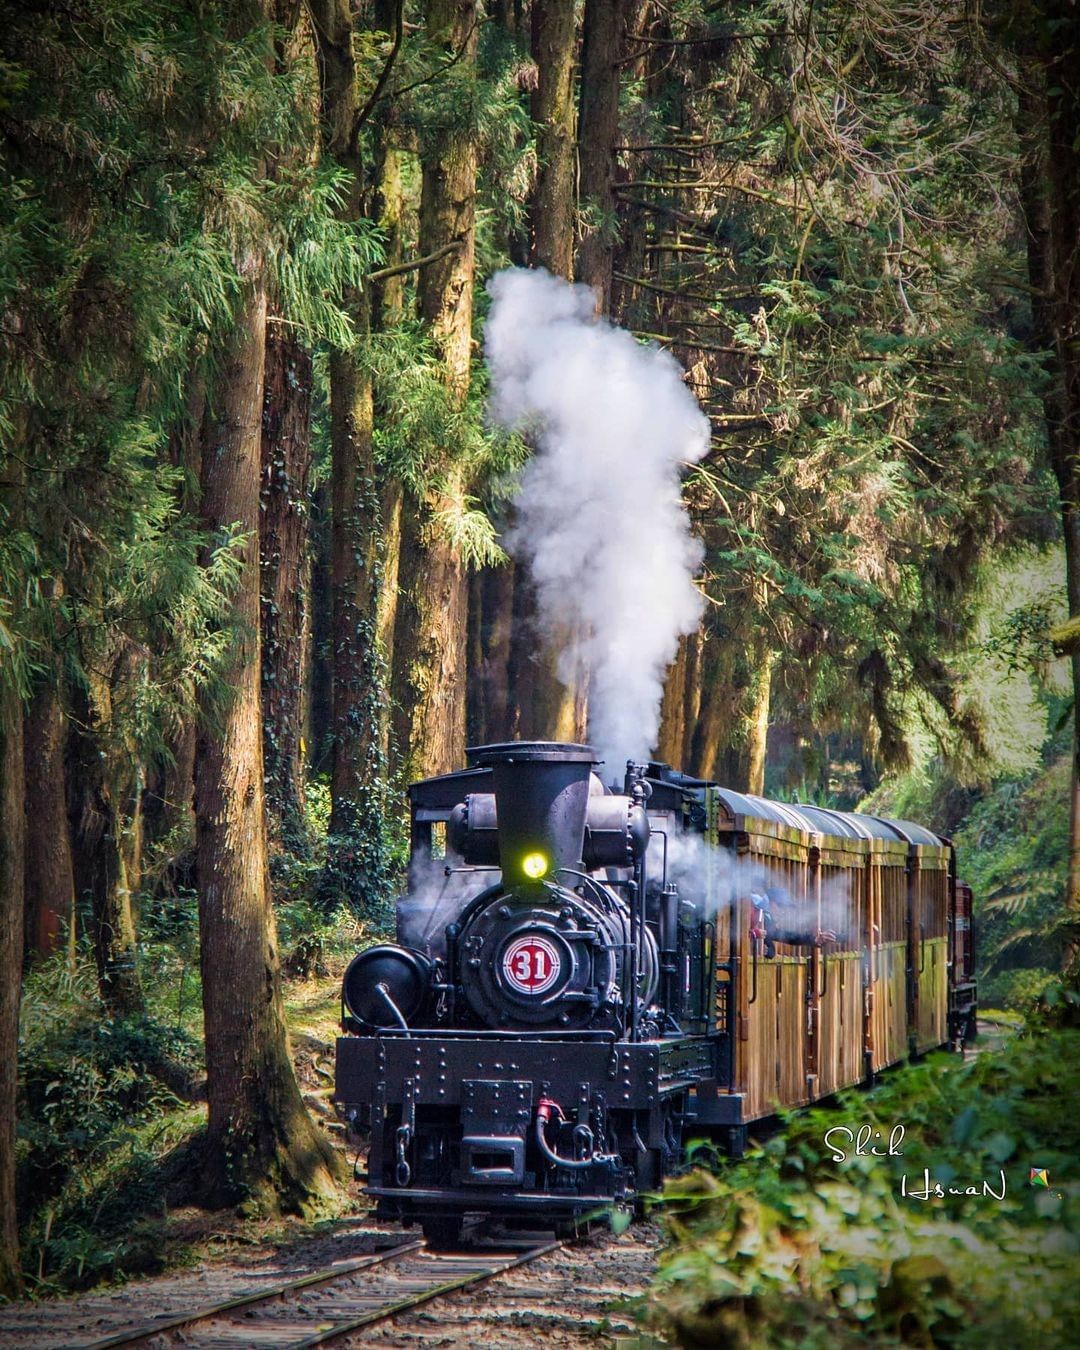 古典的阿里山蒸汽火車駛在阿里山樹林中真是經典的一幕啊！-⠀⠀⠀⠀⠀⠀⠀⠀⠀⠀⠀感謝 @shih_hsuan6260 分享的美照-⠀...